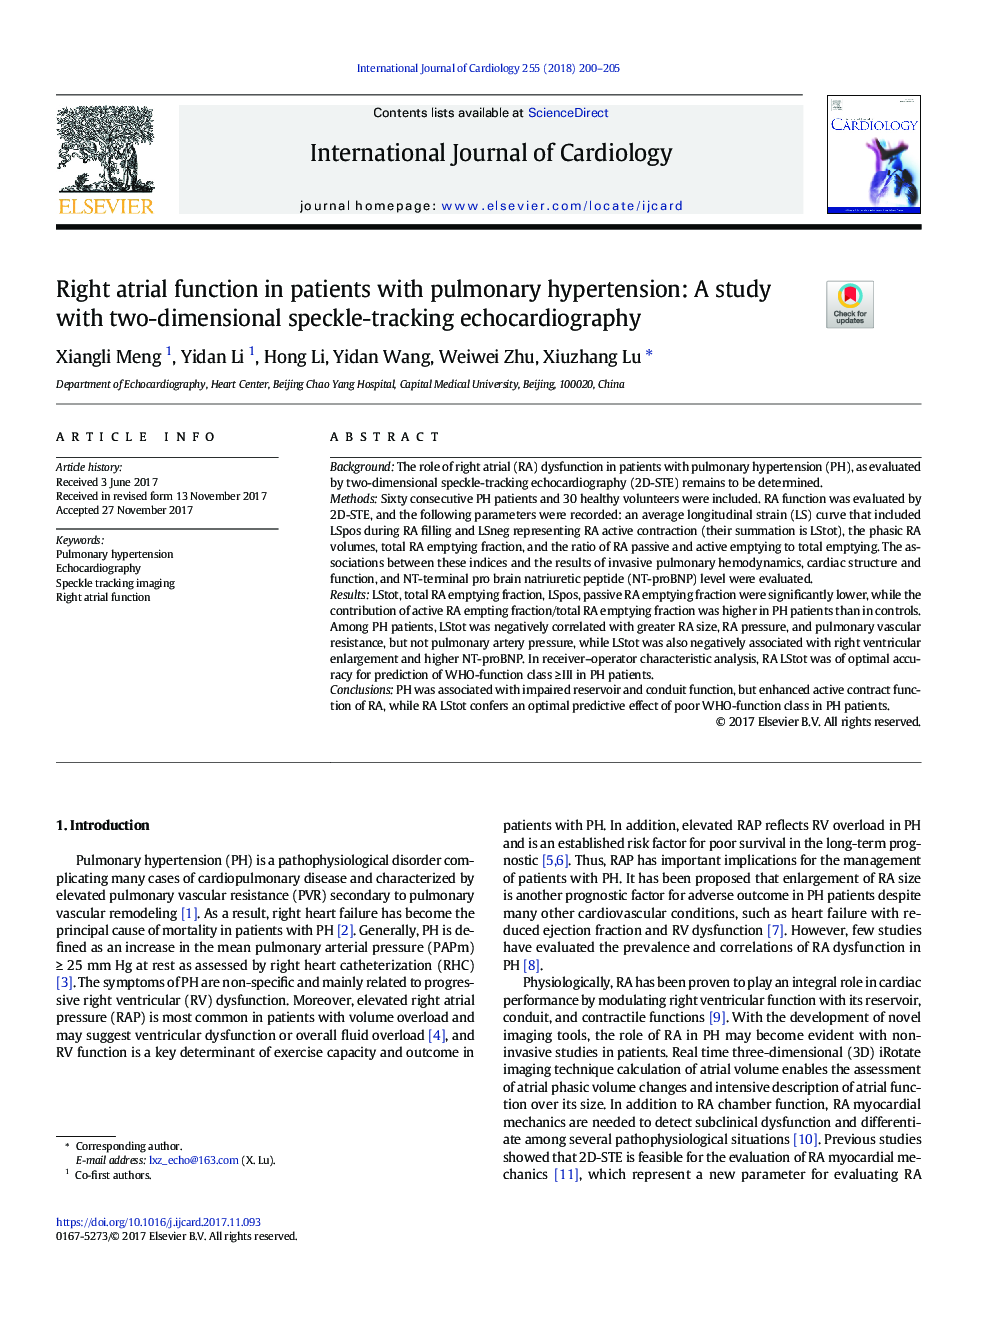 عملکرد مستقیم دهلیز در بیماران مبتلا به فشارخون ریوی: مطالعه ای با دو روش اکوکاردیوگرافی ردیابی دقیق 